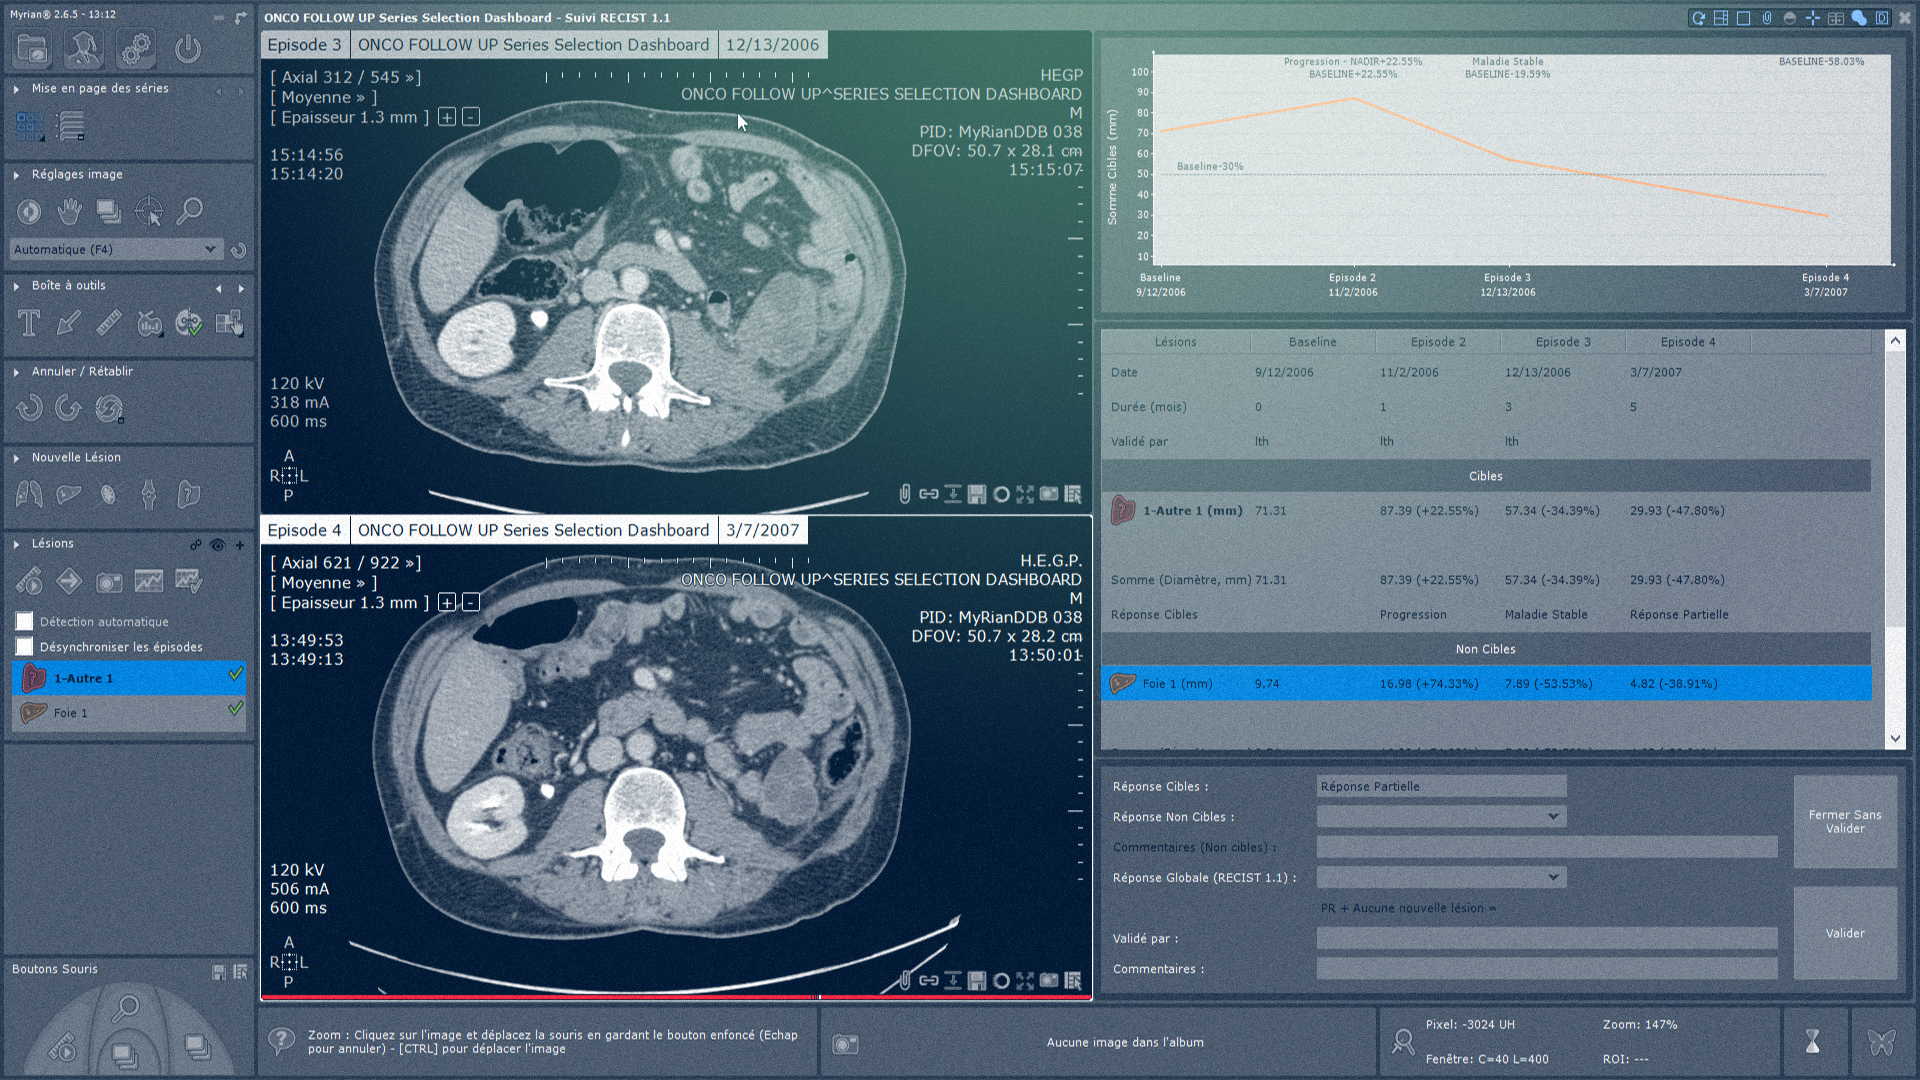 Logiciel montrant les images du scanner abdominal - IRM Abdominal - Intrasense - Logiciel Imagerie Médicale, Myrian®